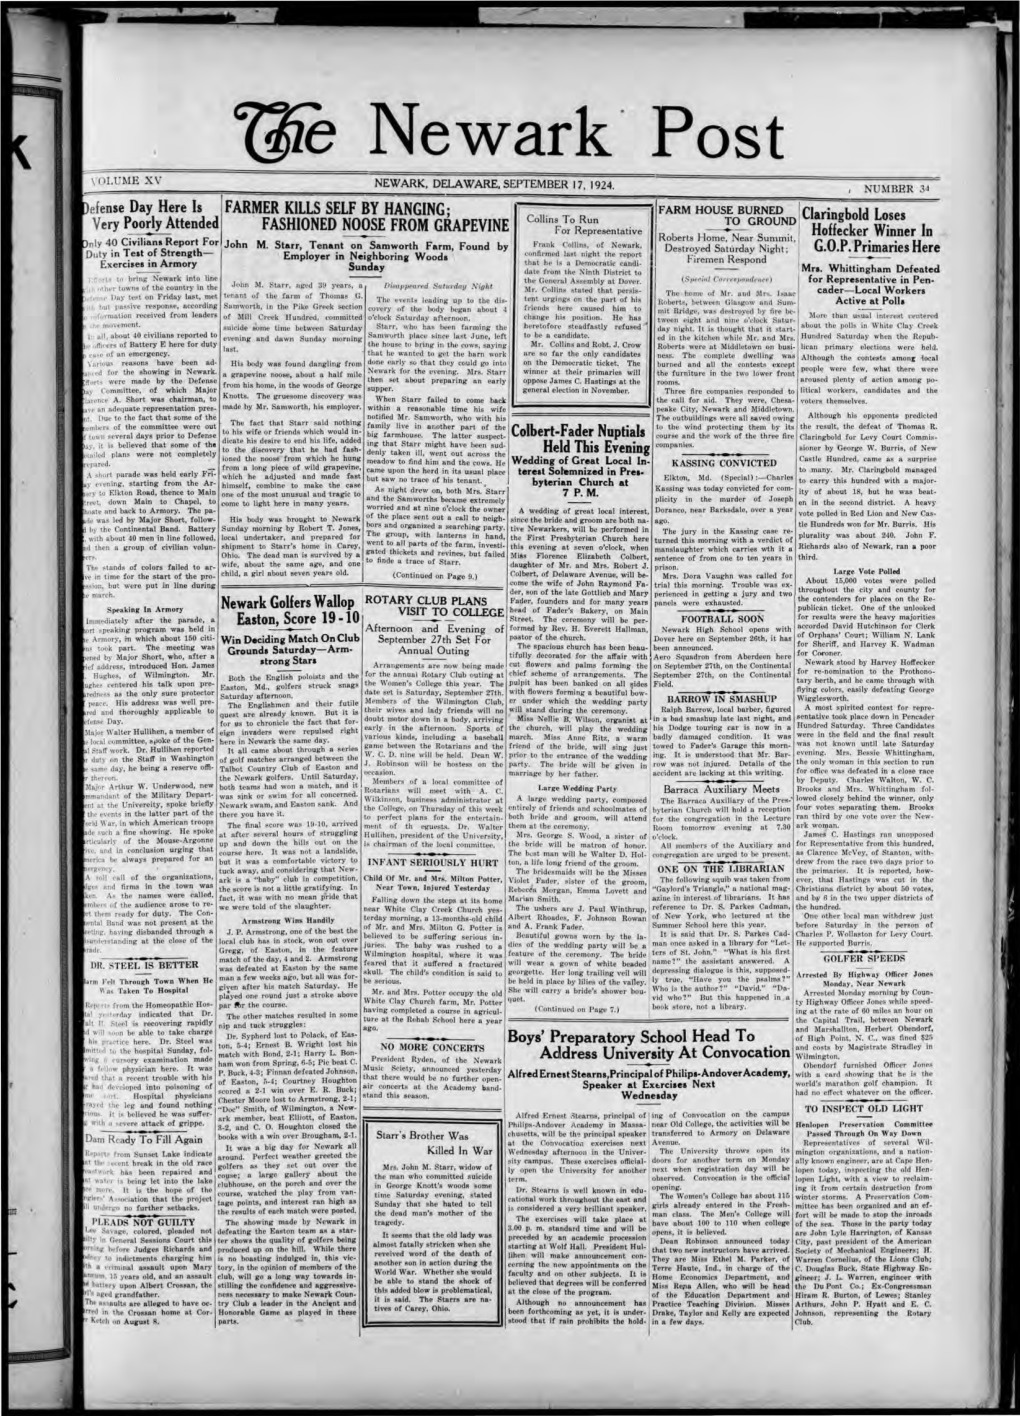 Lile Newark' Post \'OLUME Xv NEWARK, DELAWARE, SEPTEMBER 17, 1924